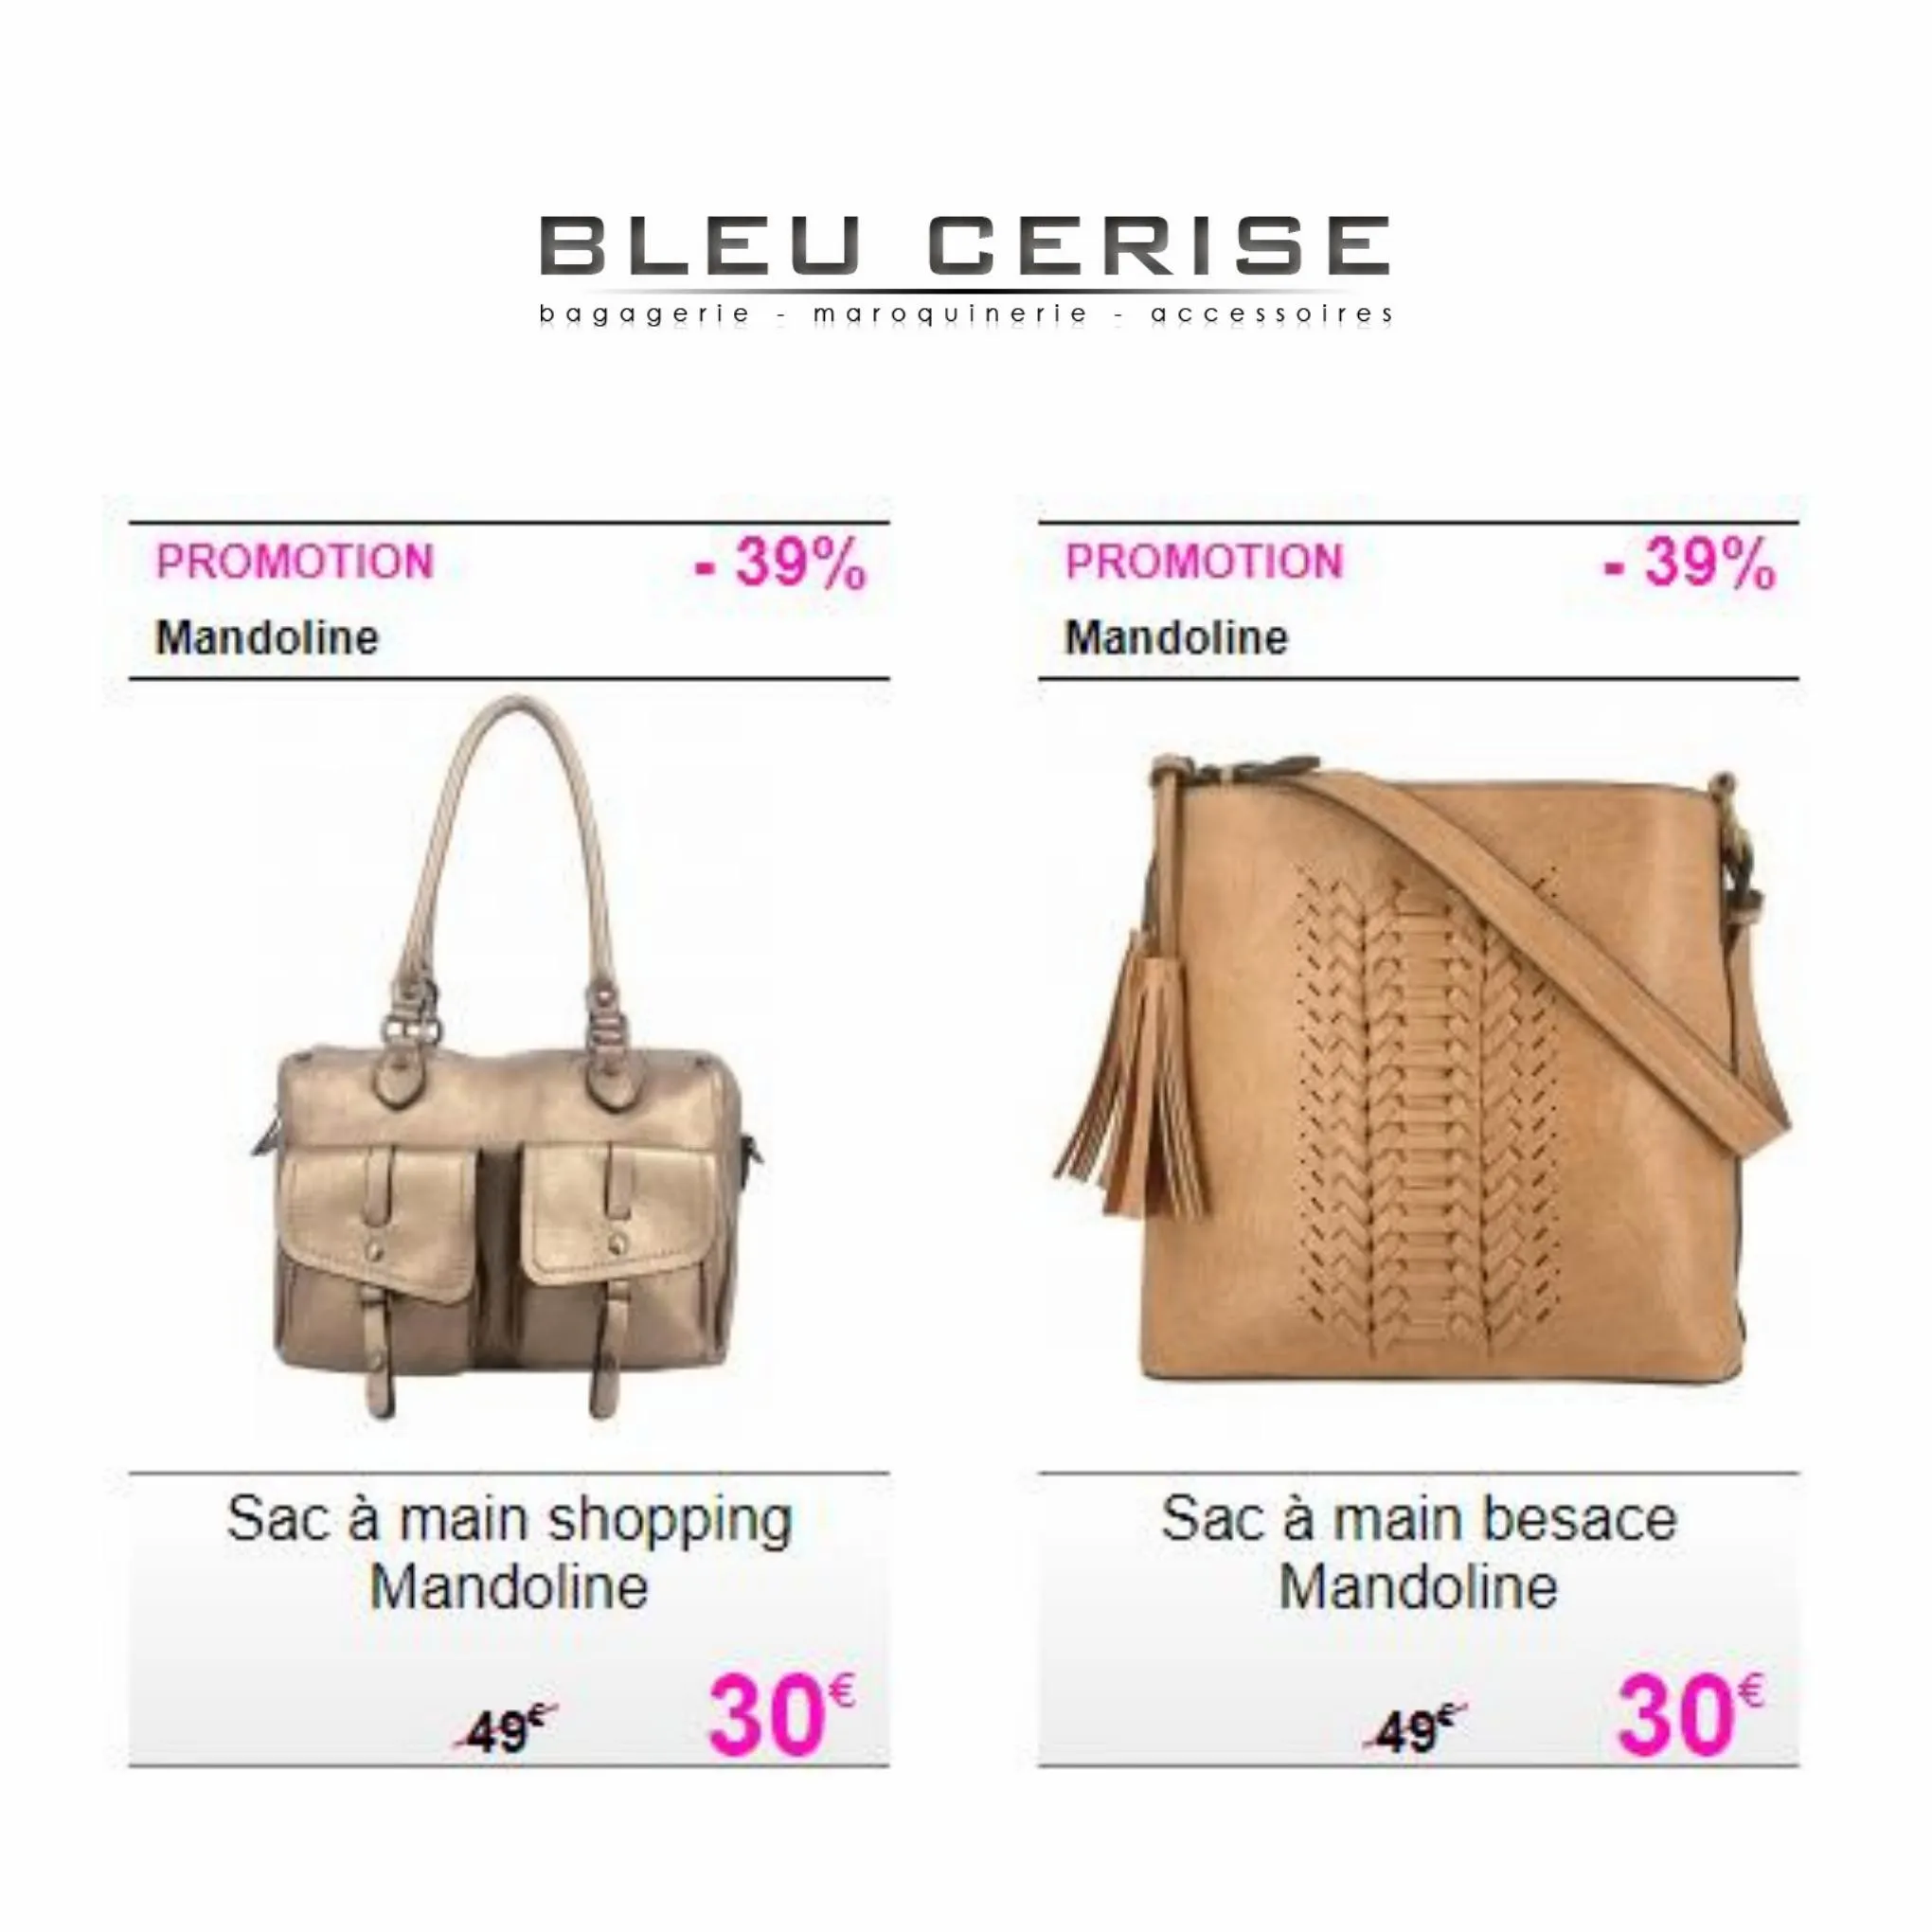 Catalogue Les meilleures offres sur les sacs pour femmes, page 00005